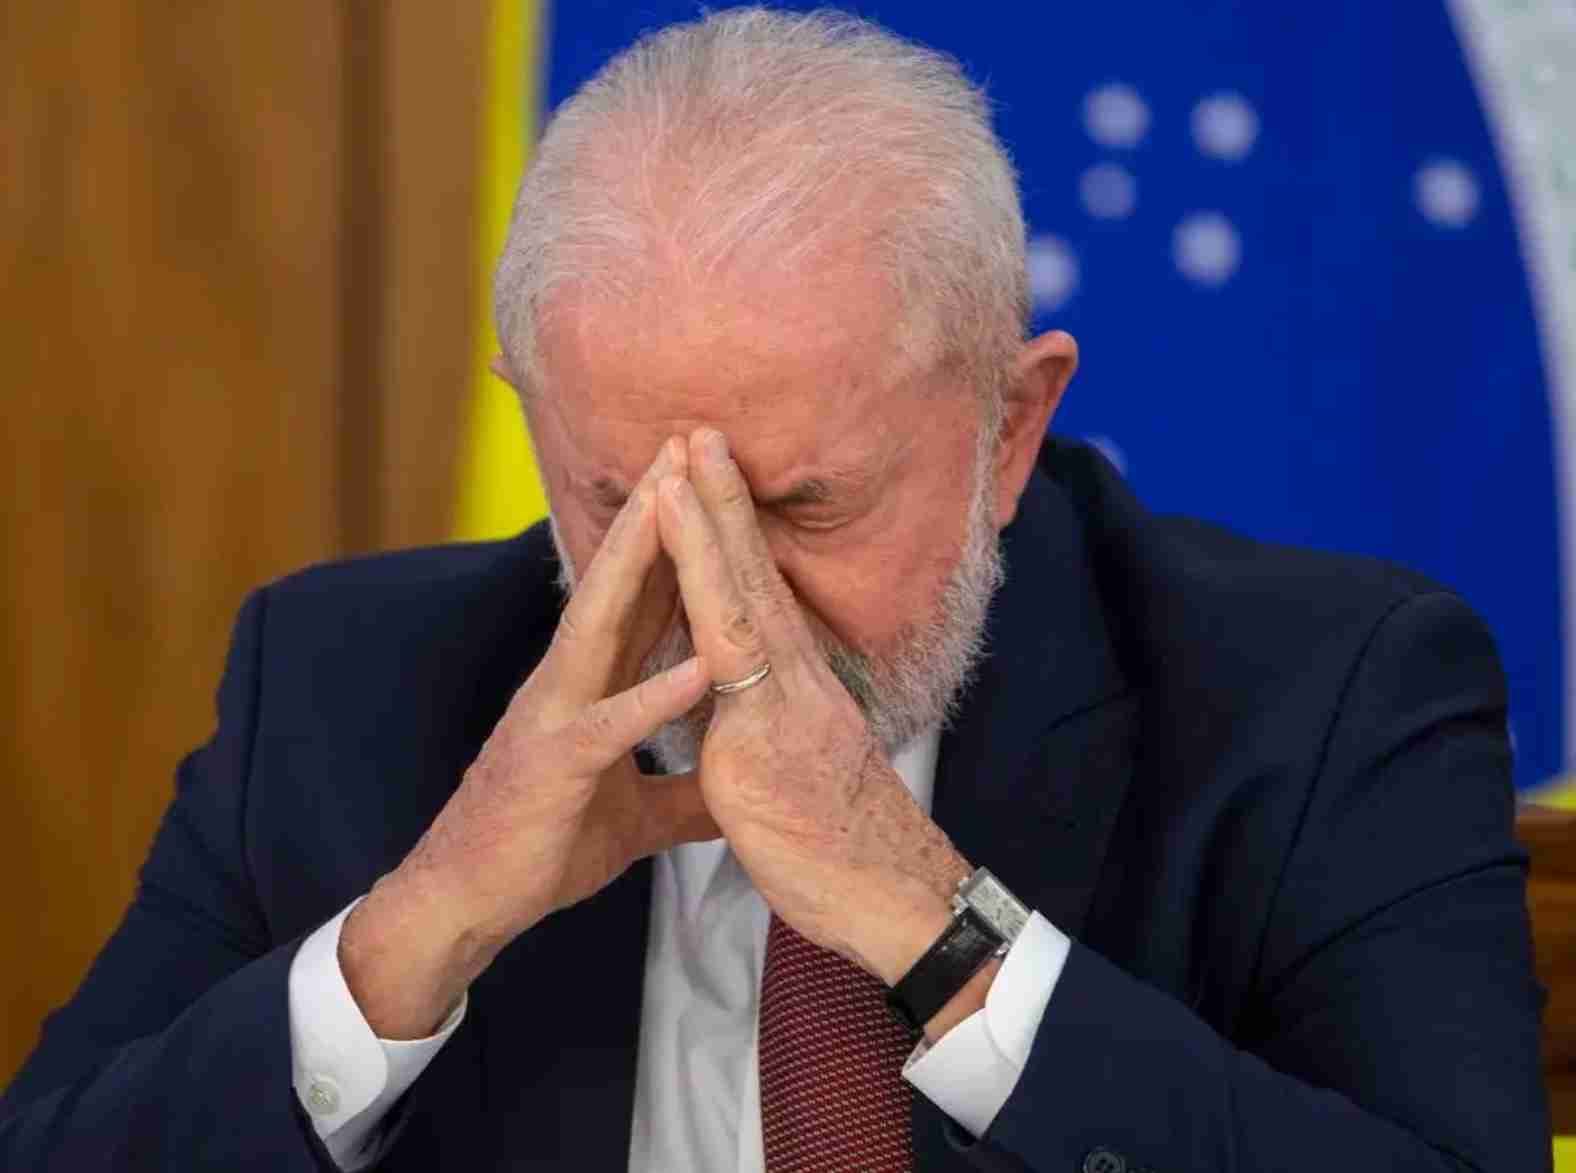 Desvendando a verdade: O documentário que revela o "gabinete do ódio" do governo Lula